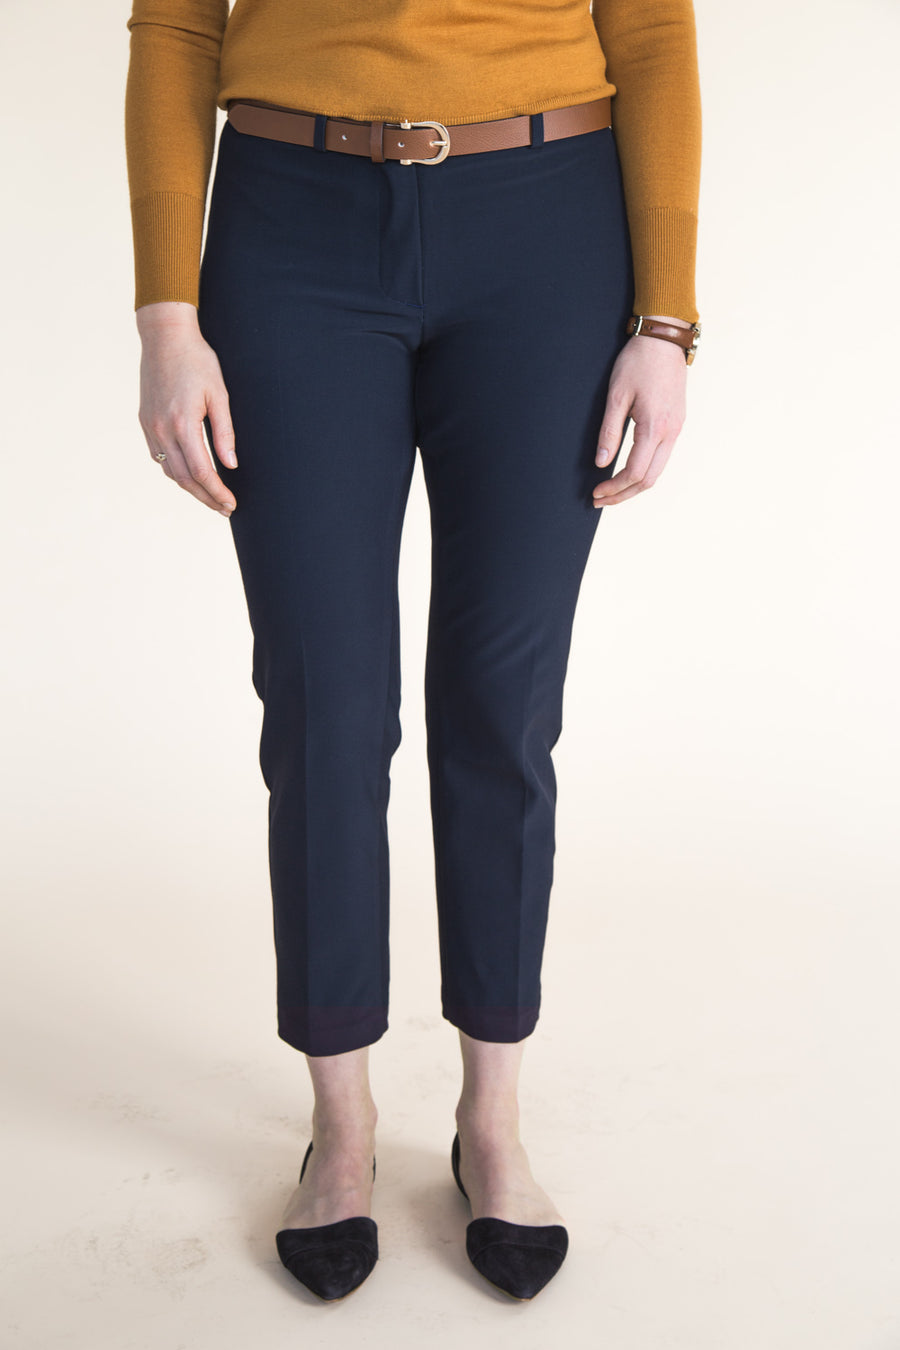 Sasha Trousers Pattern Cropped Pants Pattern 79e2a03e e611 407b a918